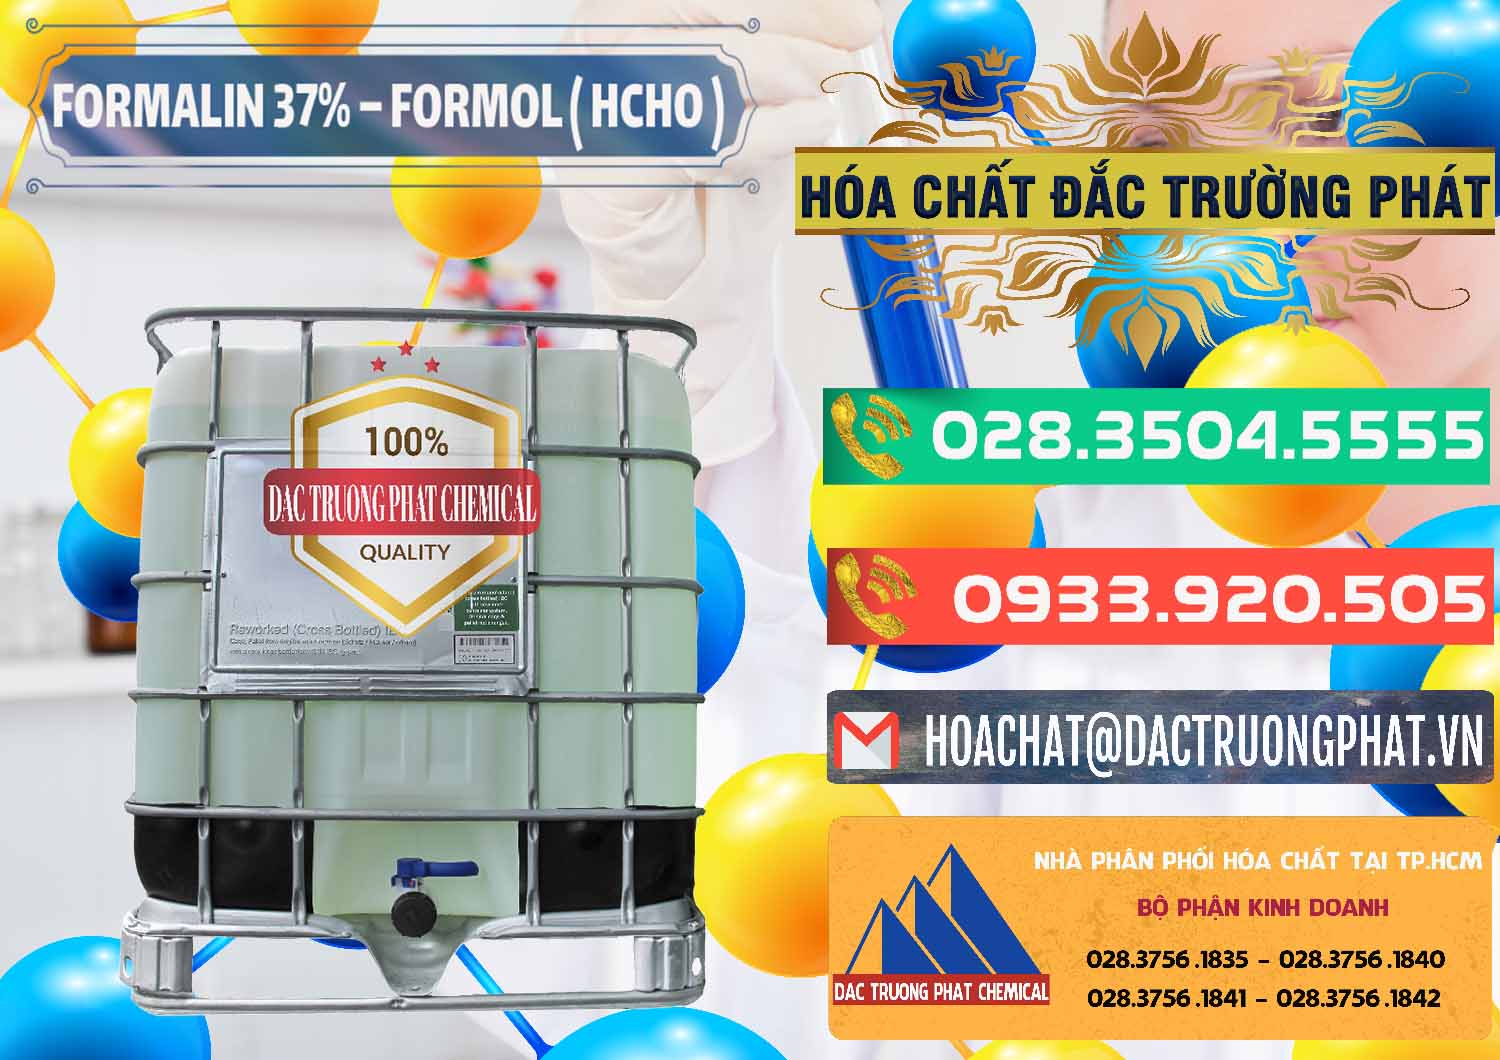 Cty bán & phân phối Formalin - Formol ( HCHO ) 37% Việt Nam - 0187 - Kinh doanh - cung cấp hóa chất tại TP.HCM - congtyhoachat.com.vn